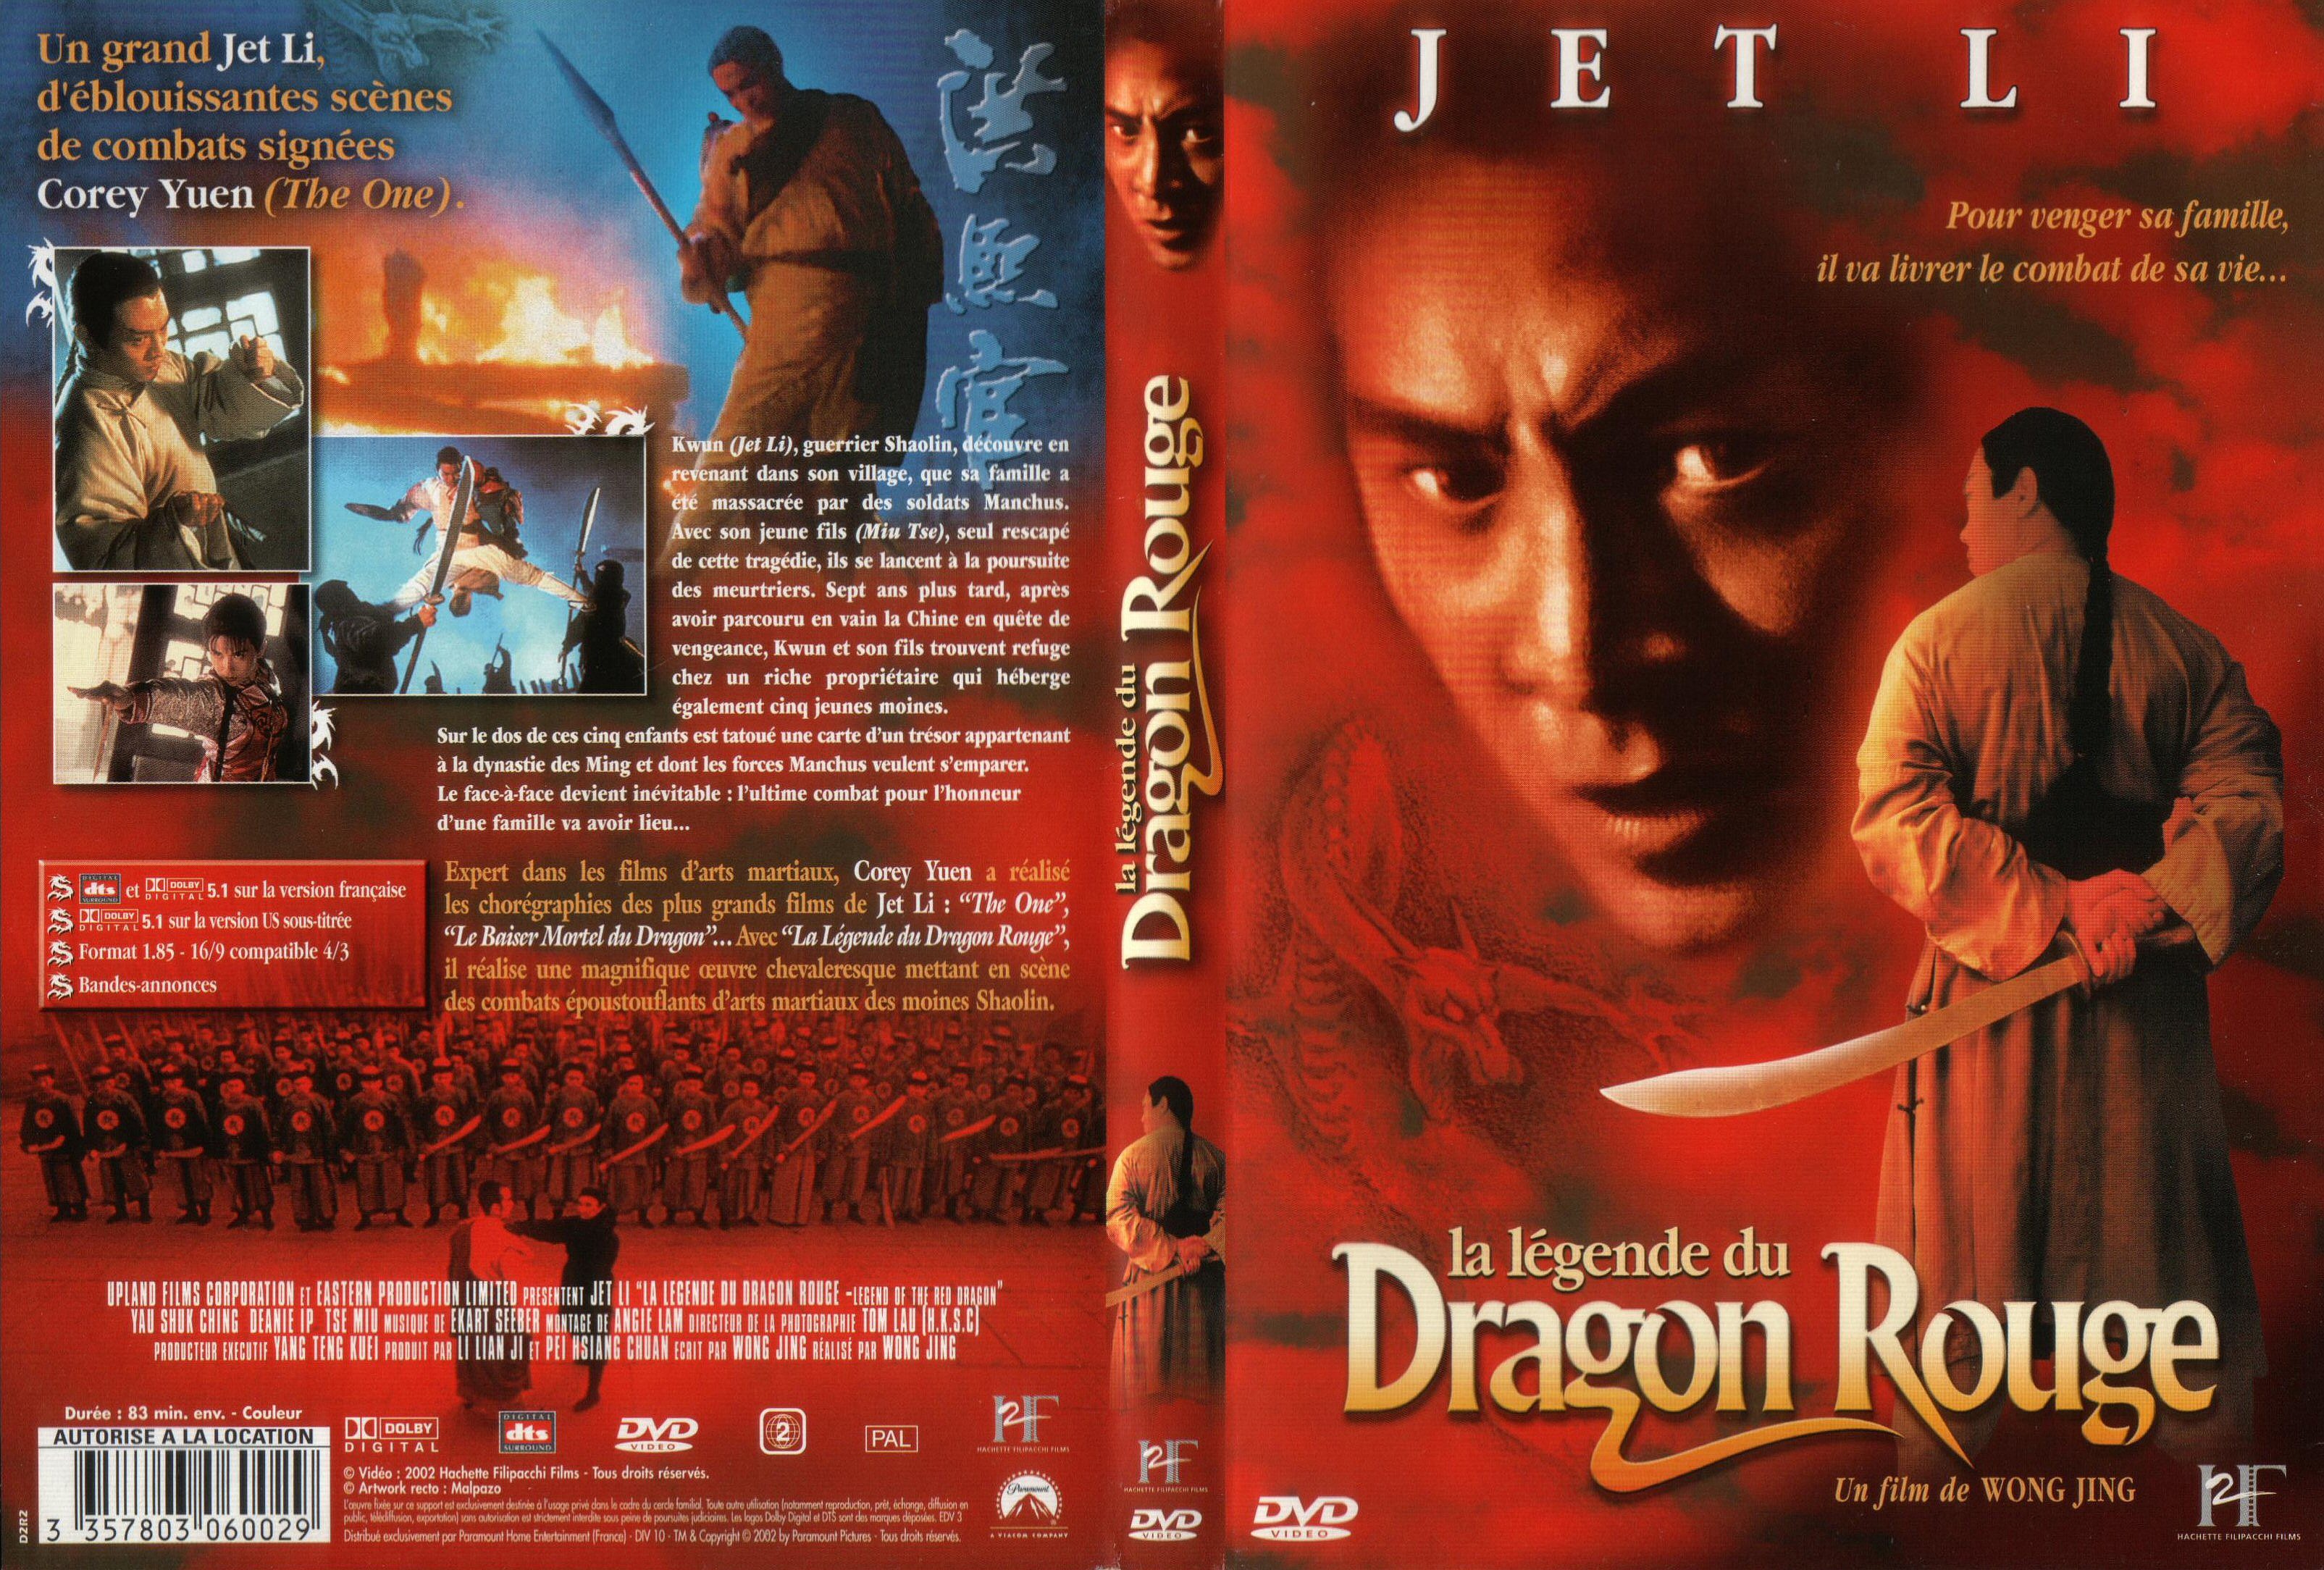 Jaquette DVD La lgende du dragon rouge